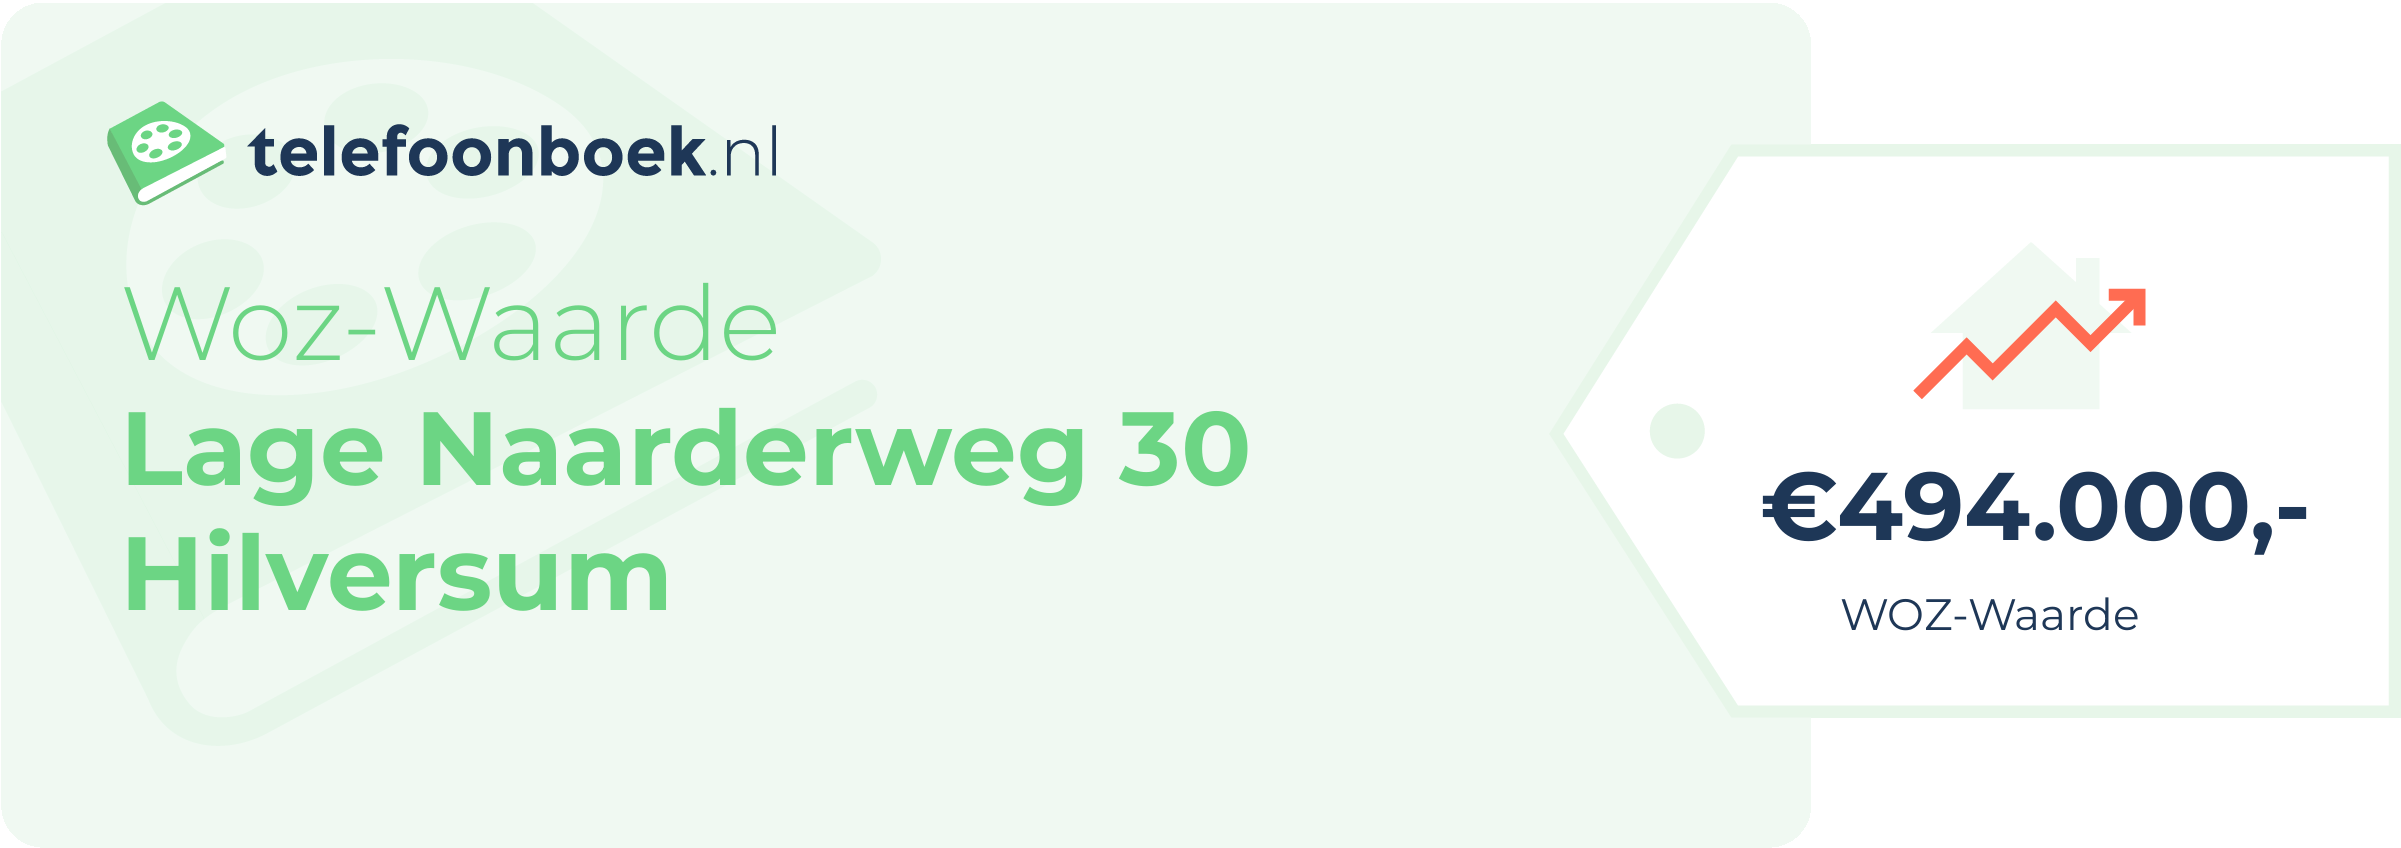 WOZ-waarde Lage Naarderweg 30 Hilversum